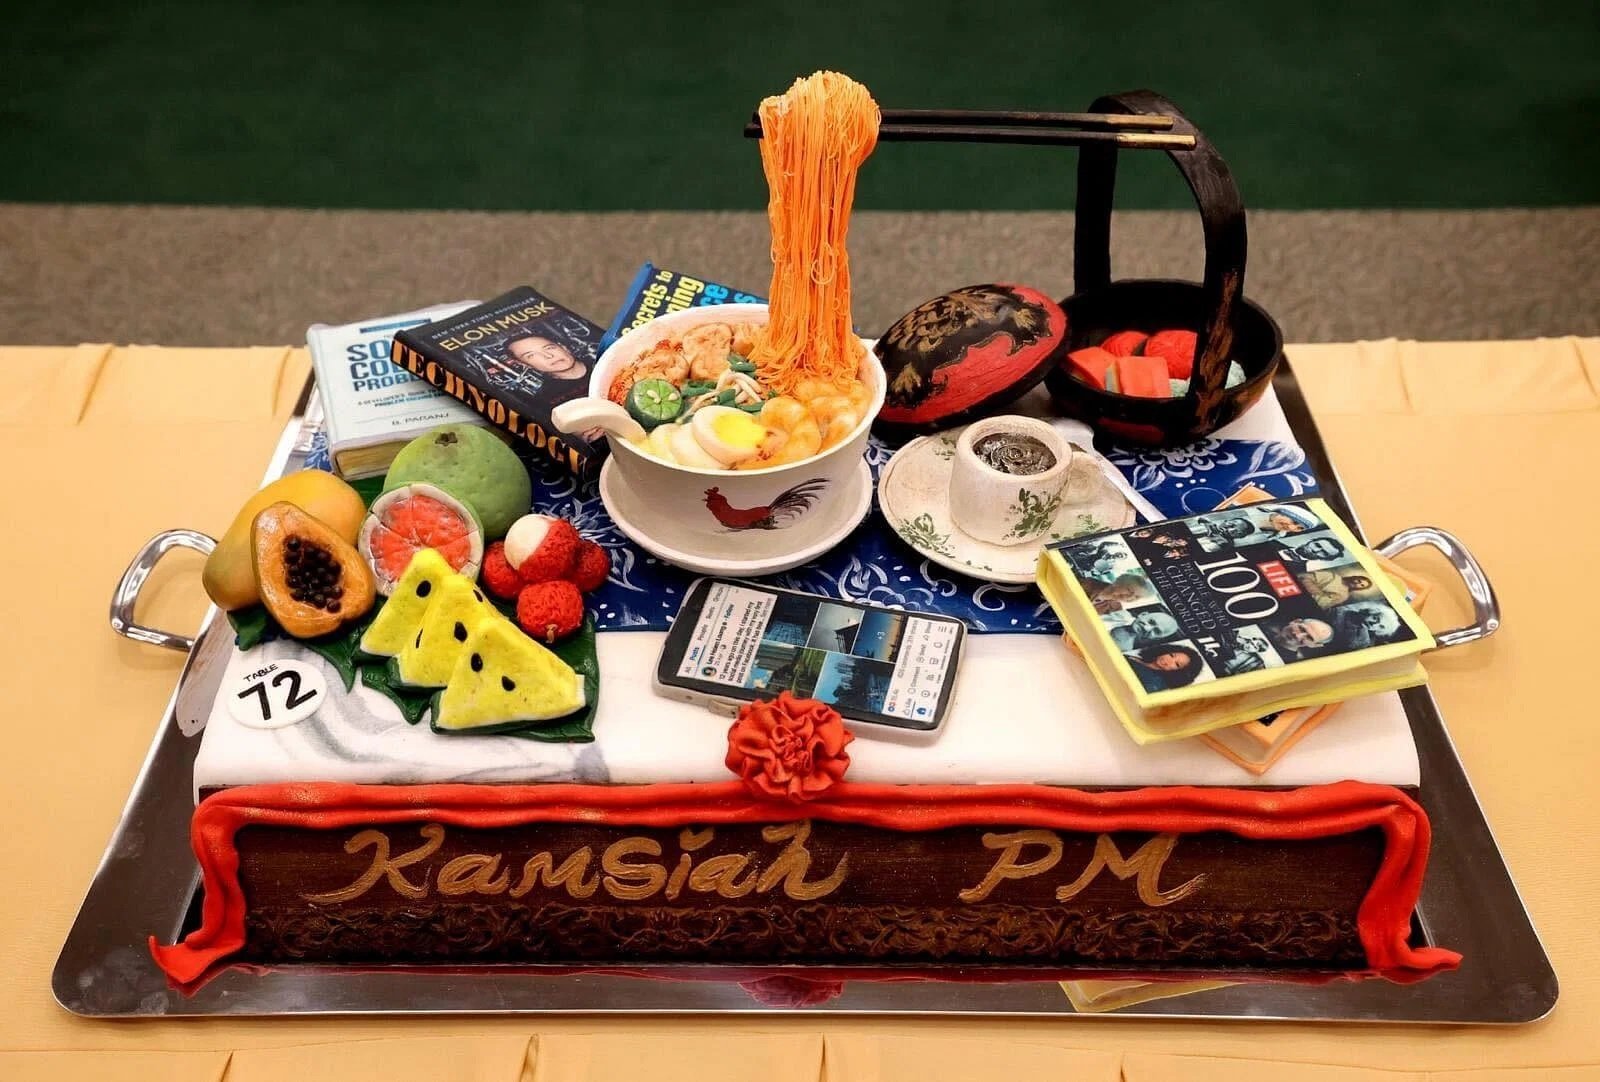 献给李显龙的蛋糕以当地美食、水果、书籍等物品为造型，写上“Kamsiah”（感谢）总理的祝语。